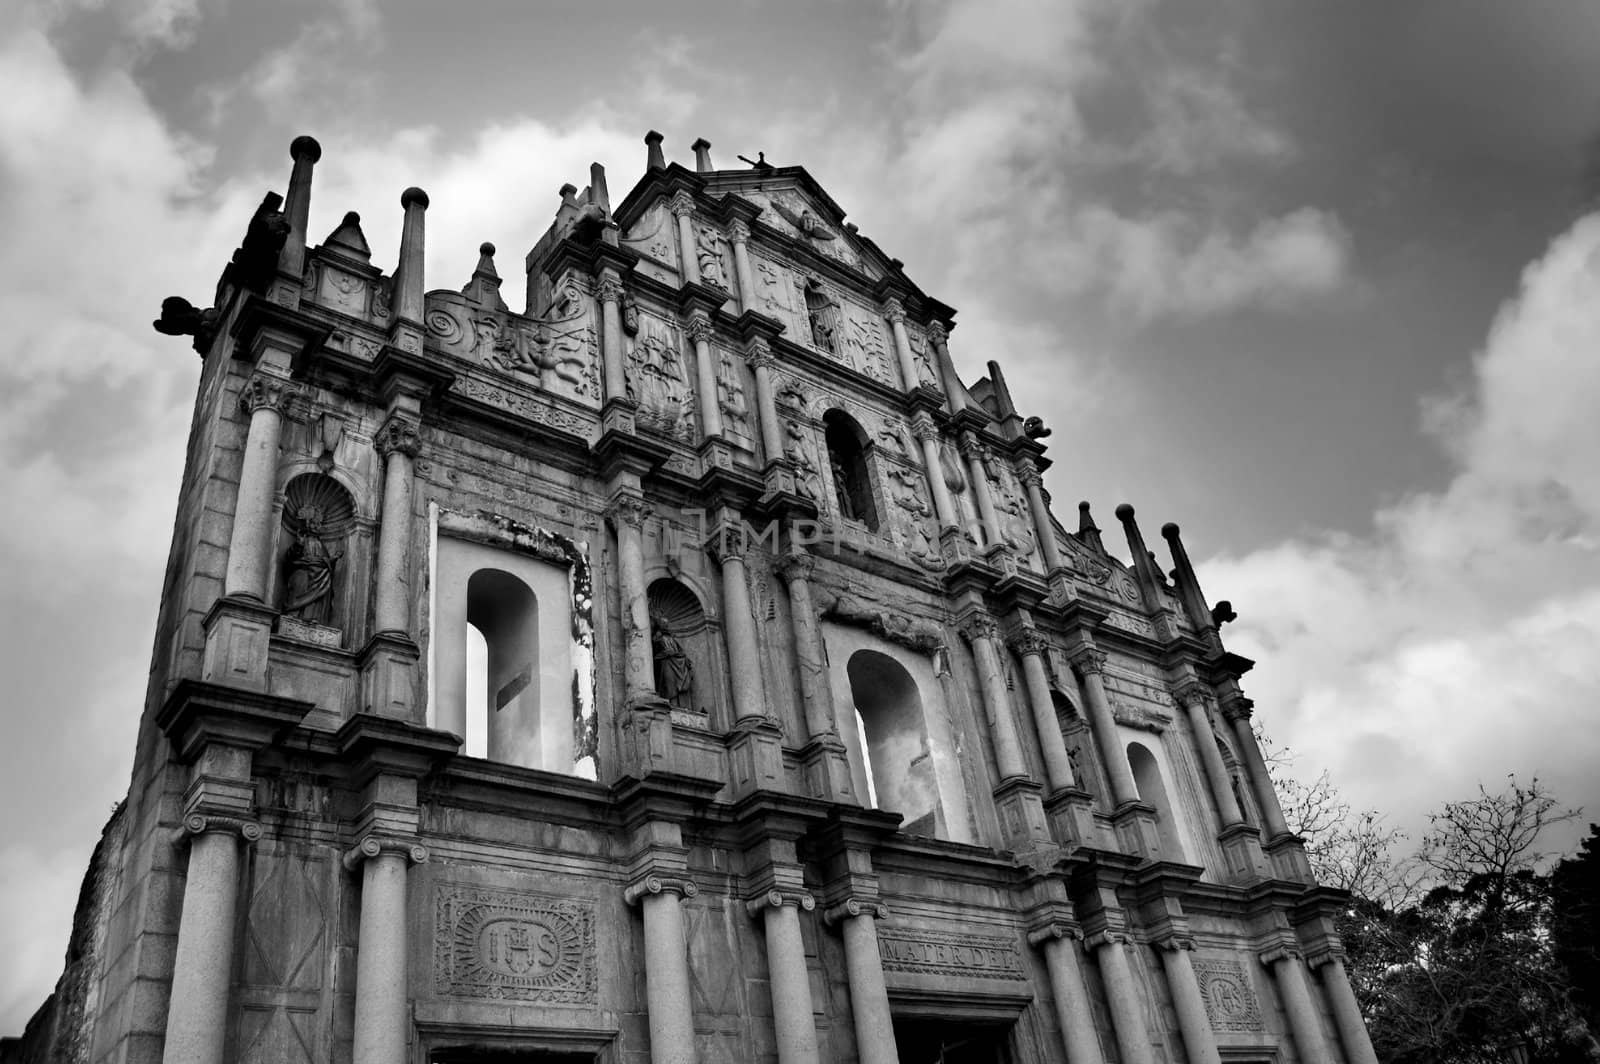 Ruins of St. Paul's in Macau by szefei